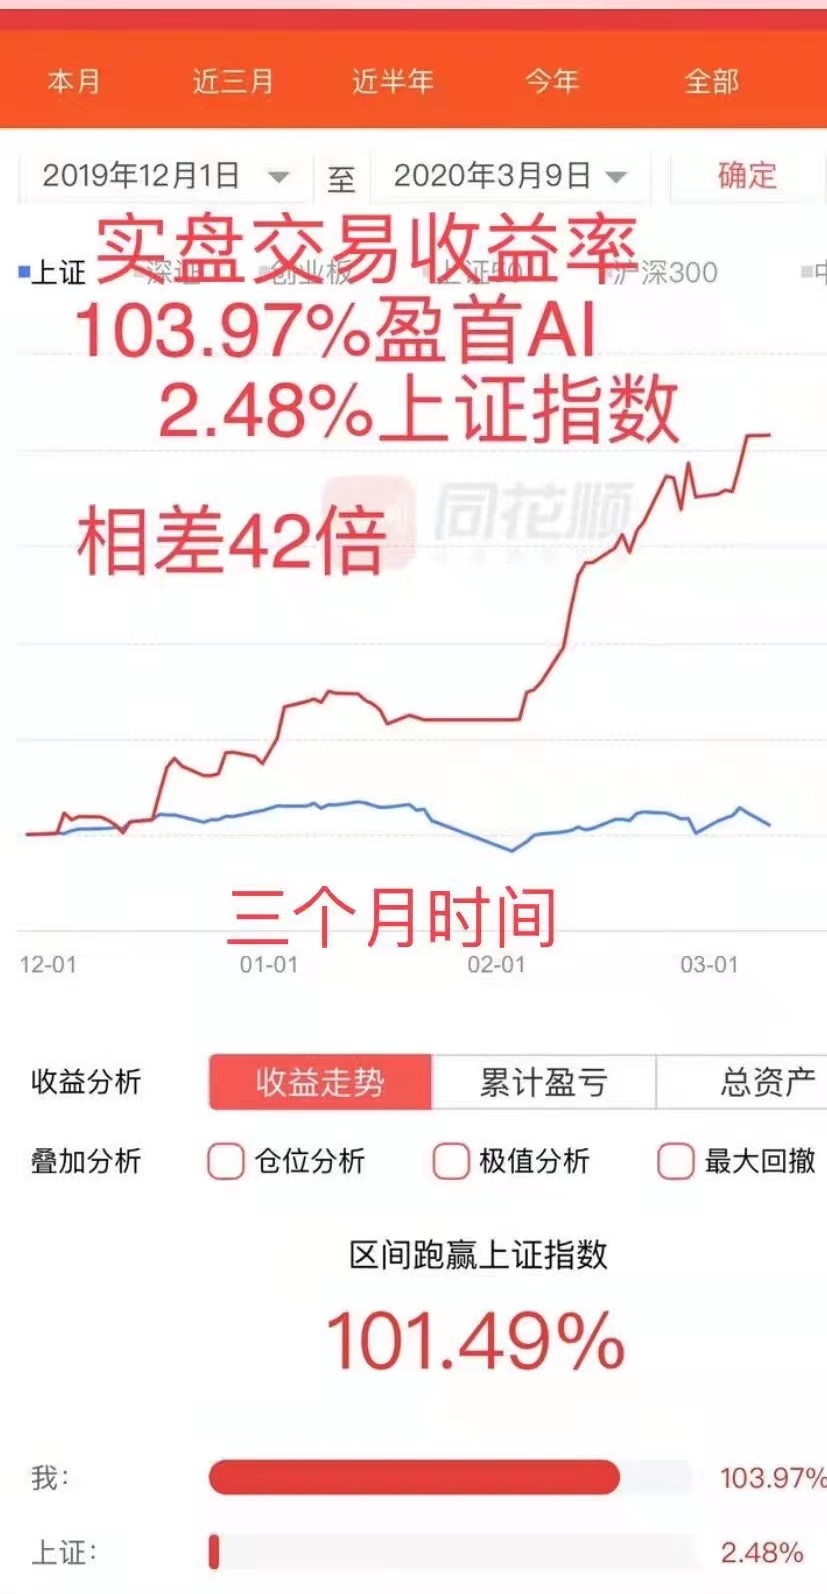 最新一个月获利34.69%!同期大盘跌8.8% !《盈首AI全自动炒股机器人》超级机构版实盘账户收益率跑赢同期深圳成指～43.4%!